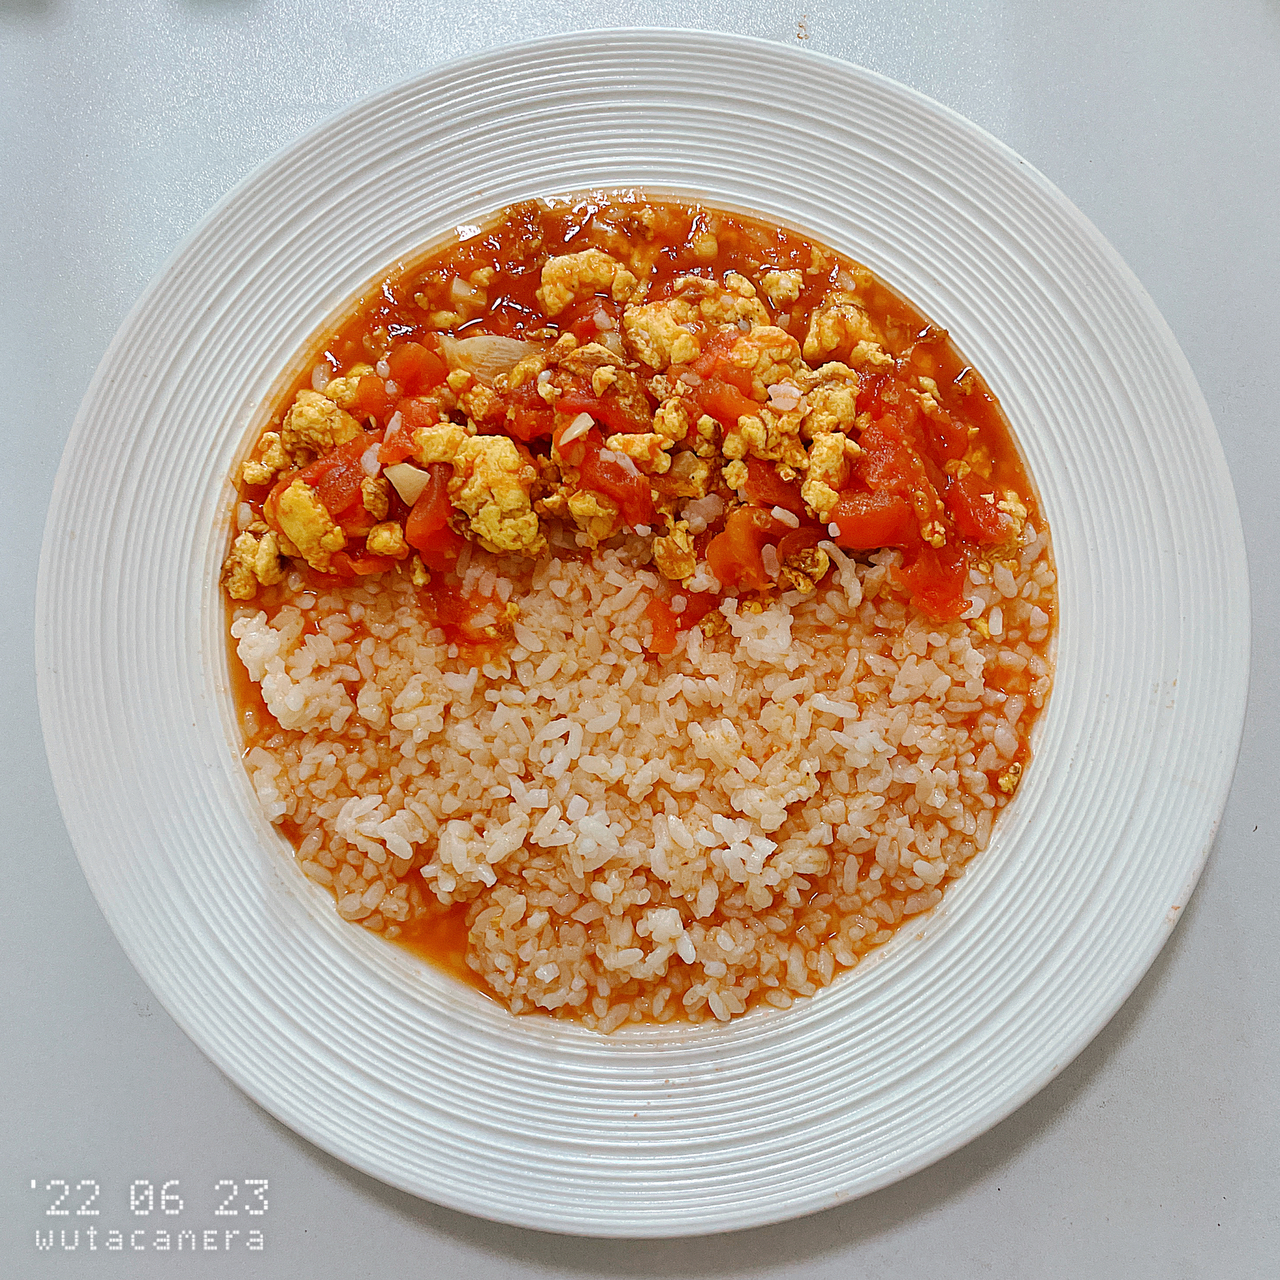 剩米饭这样做❗️番茄鸡蛋浓汤烩饭❗️连吃三碗都不够